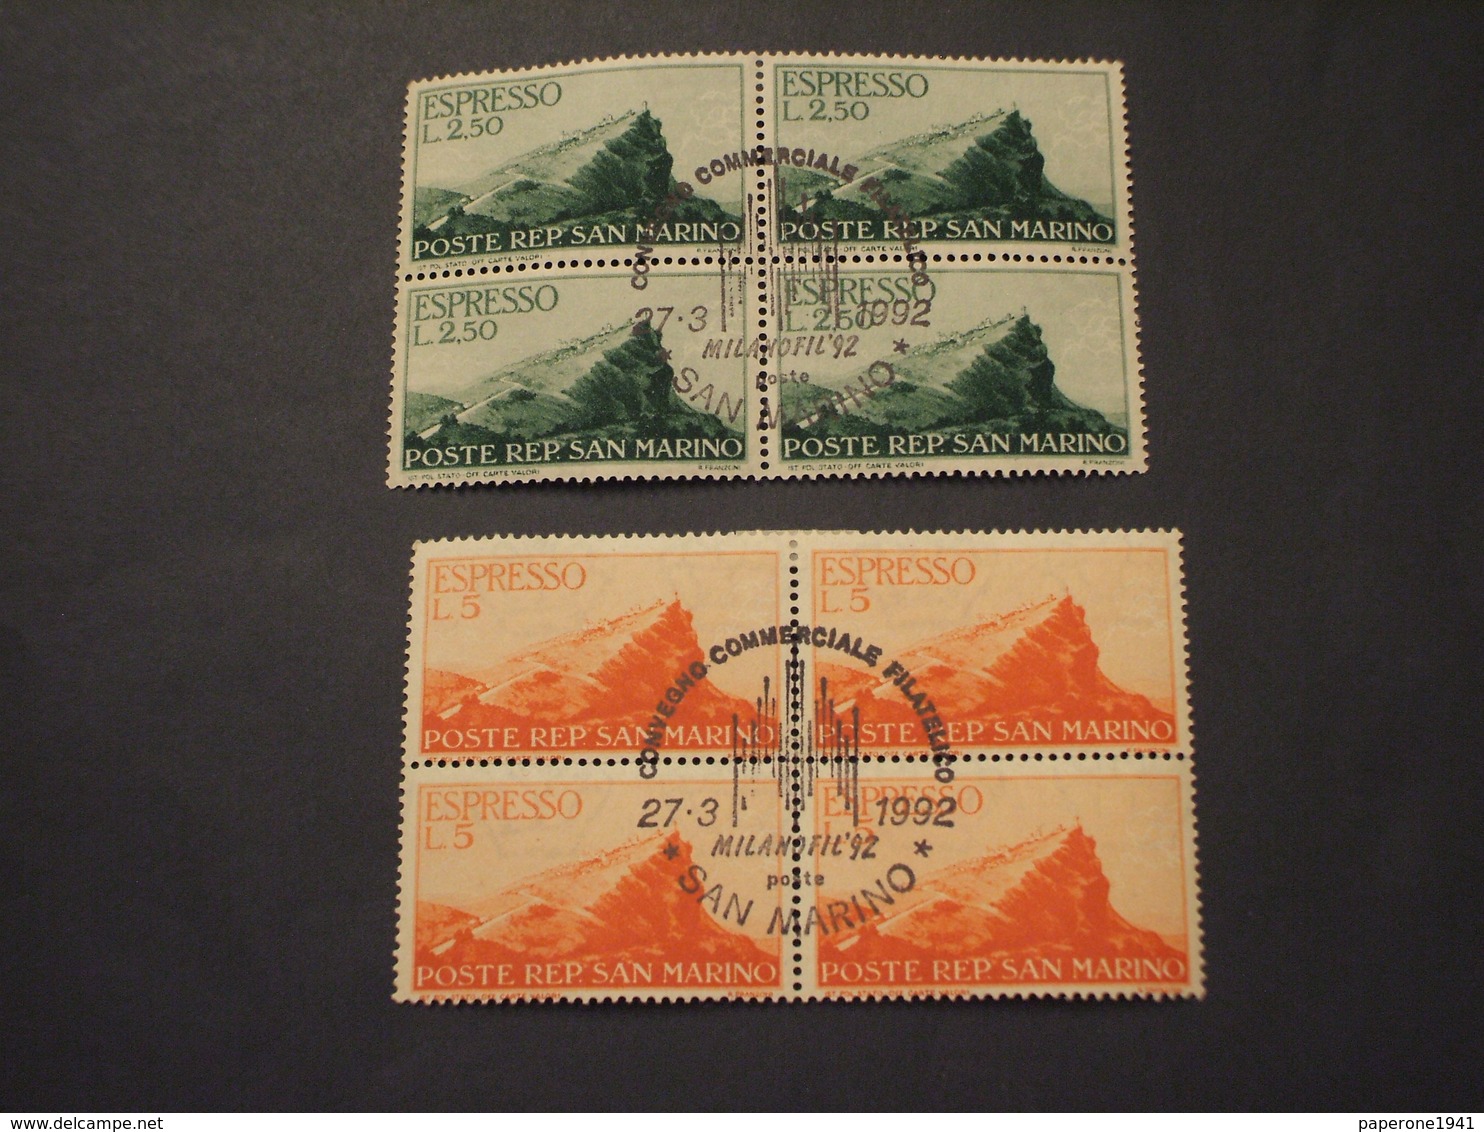 SAN MARINO-ESPRESSI-1945 MONTE TITANO 2 VALORI, Annullo Con Duomo Di Milano - TIMBRATI/USED - Express Letter Stamps